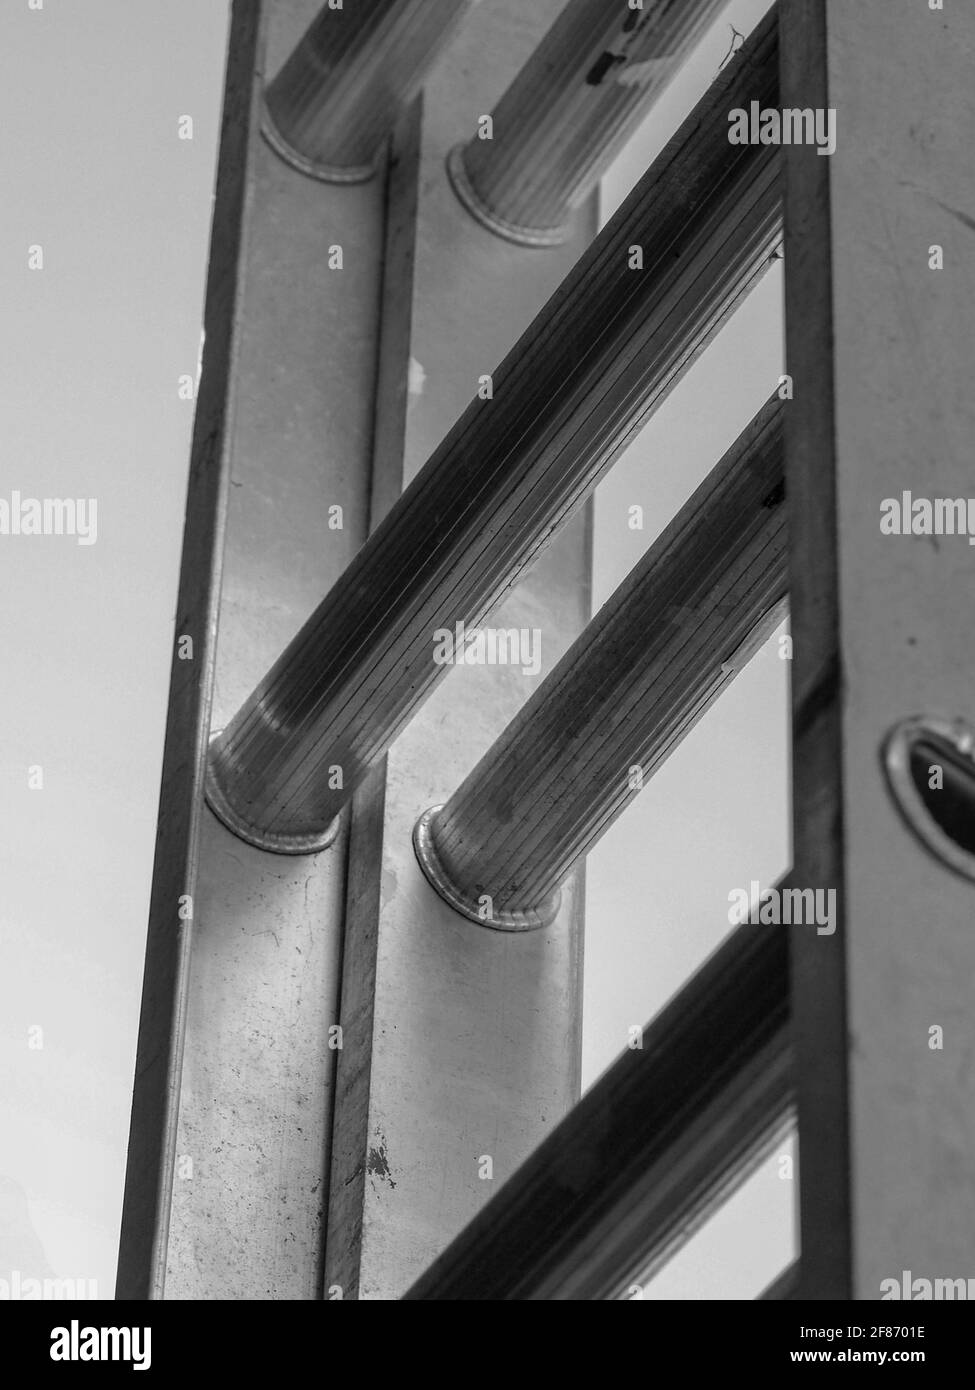 La montée. Une échelle d'extension en métal aluminium pour atteindre les endroits les plus élevés Banque D'Images